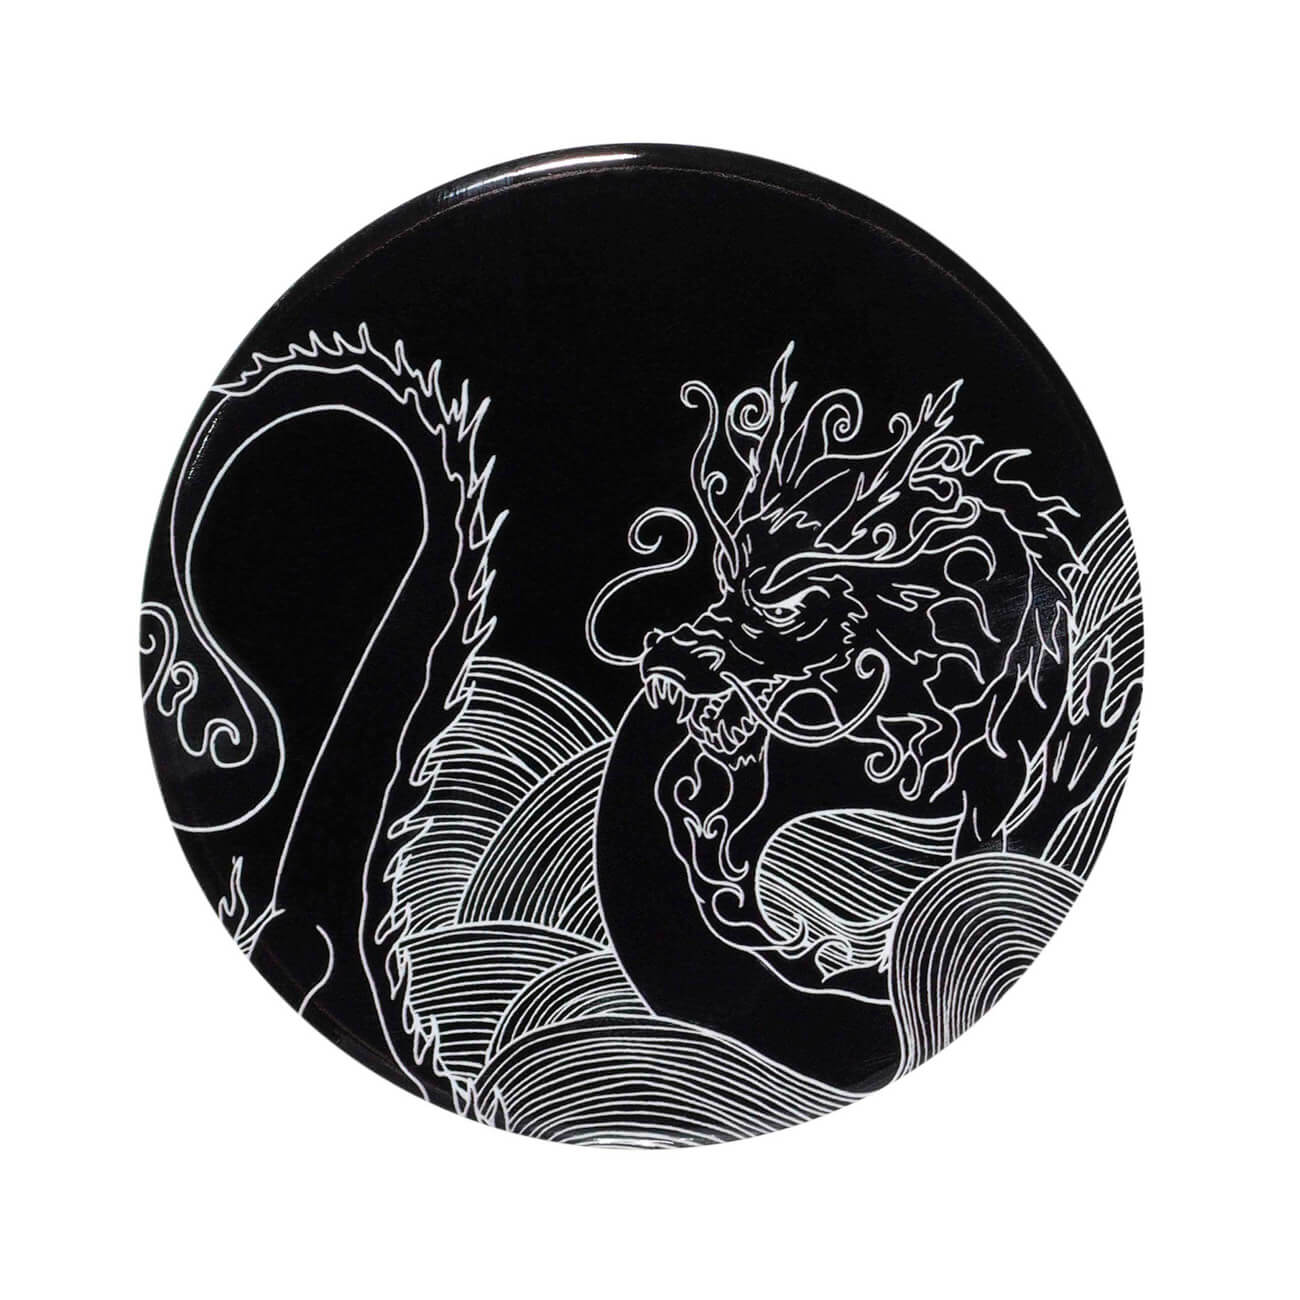 Подставка под кружку, 11 см, керамика/пробка, круглая, черная, Дракон, Dragon dayron сувенир дракон таня гжель ной